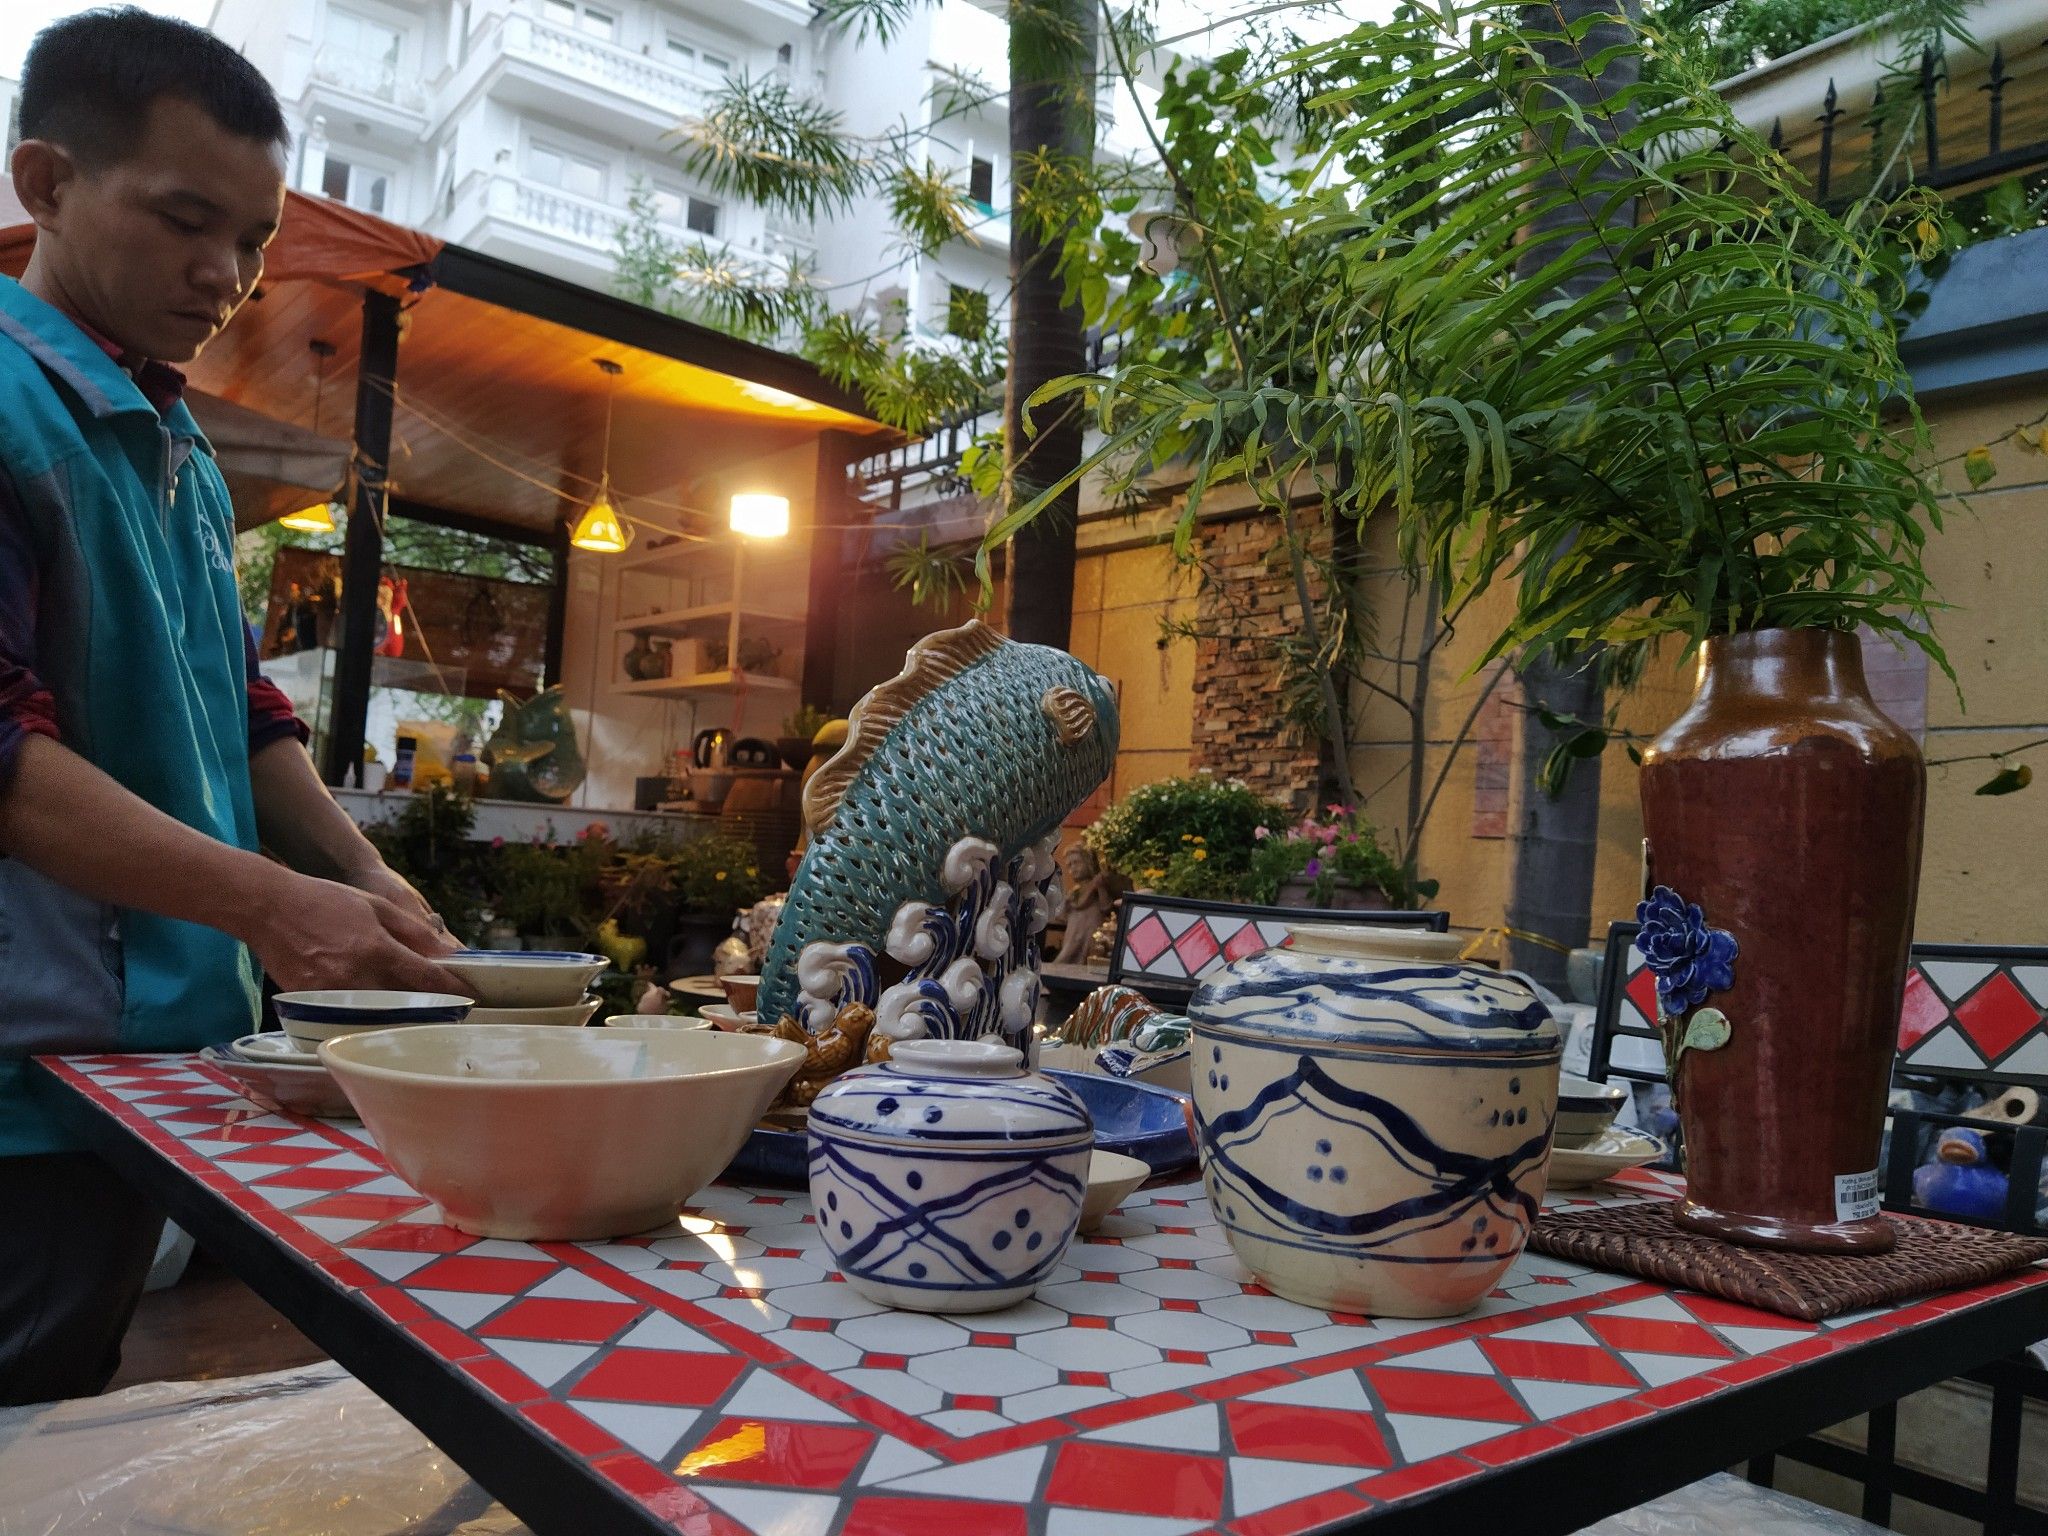  Mosaic hiện đại, bàn ghế ghép gạch gốm ăn lẩu cho nhà hàng, quán ăn 